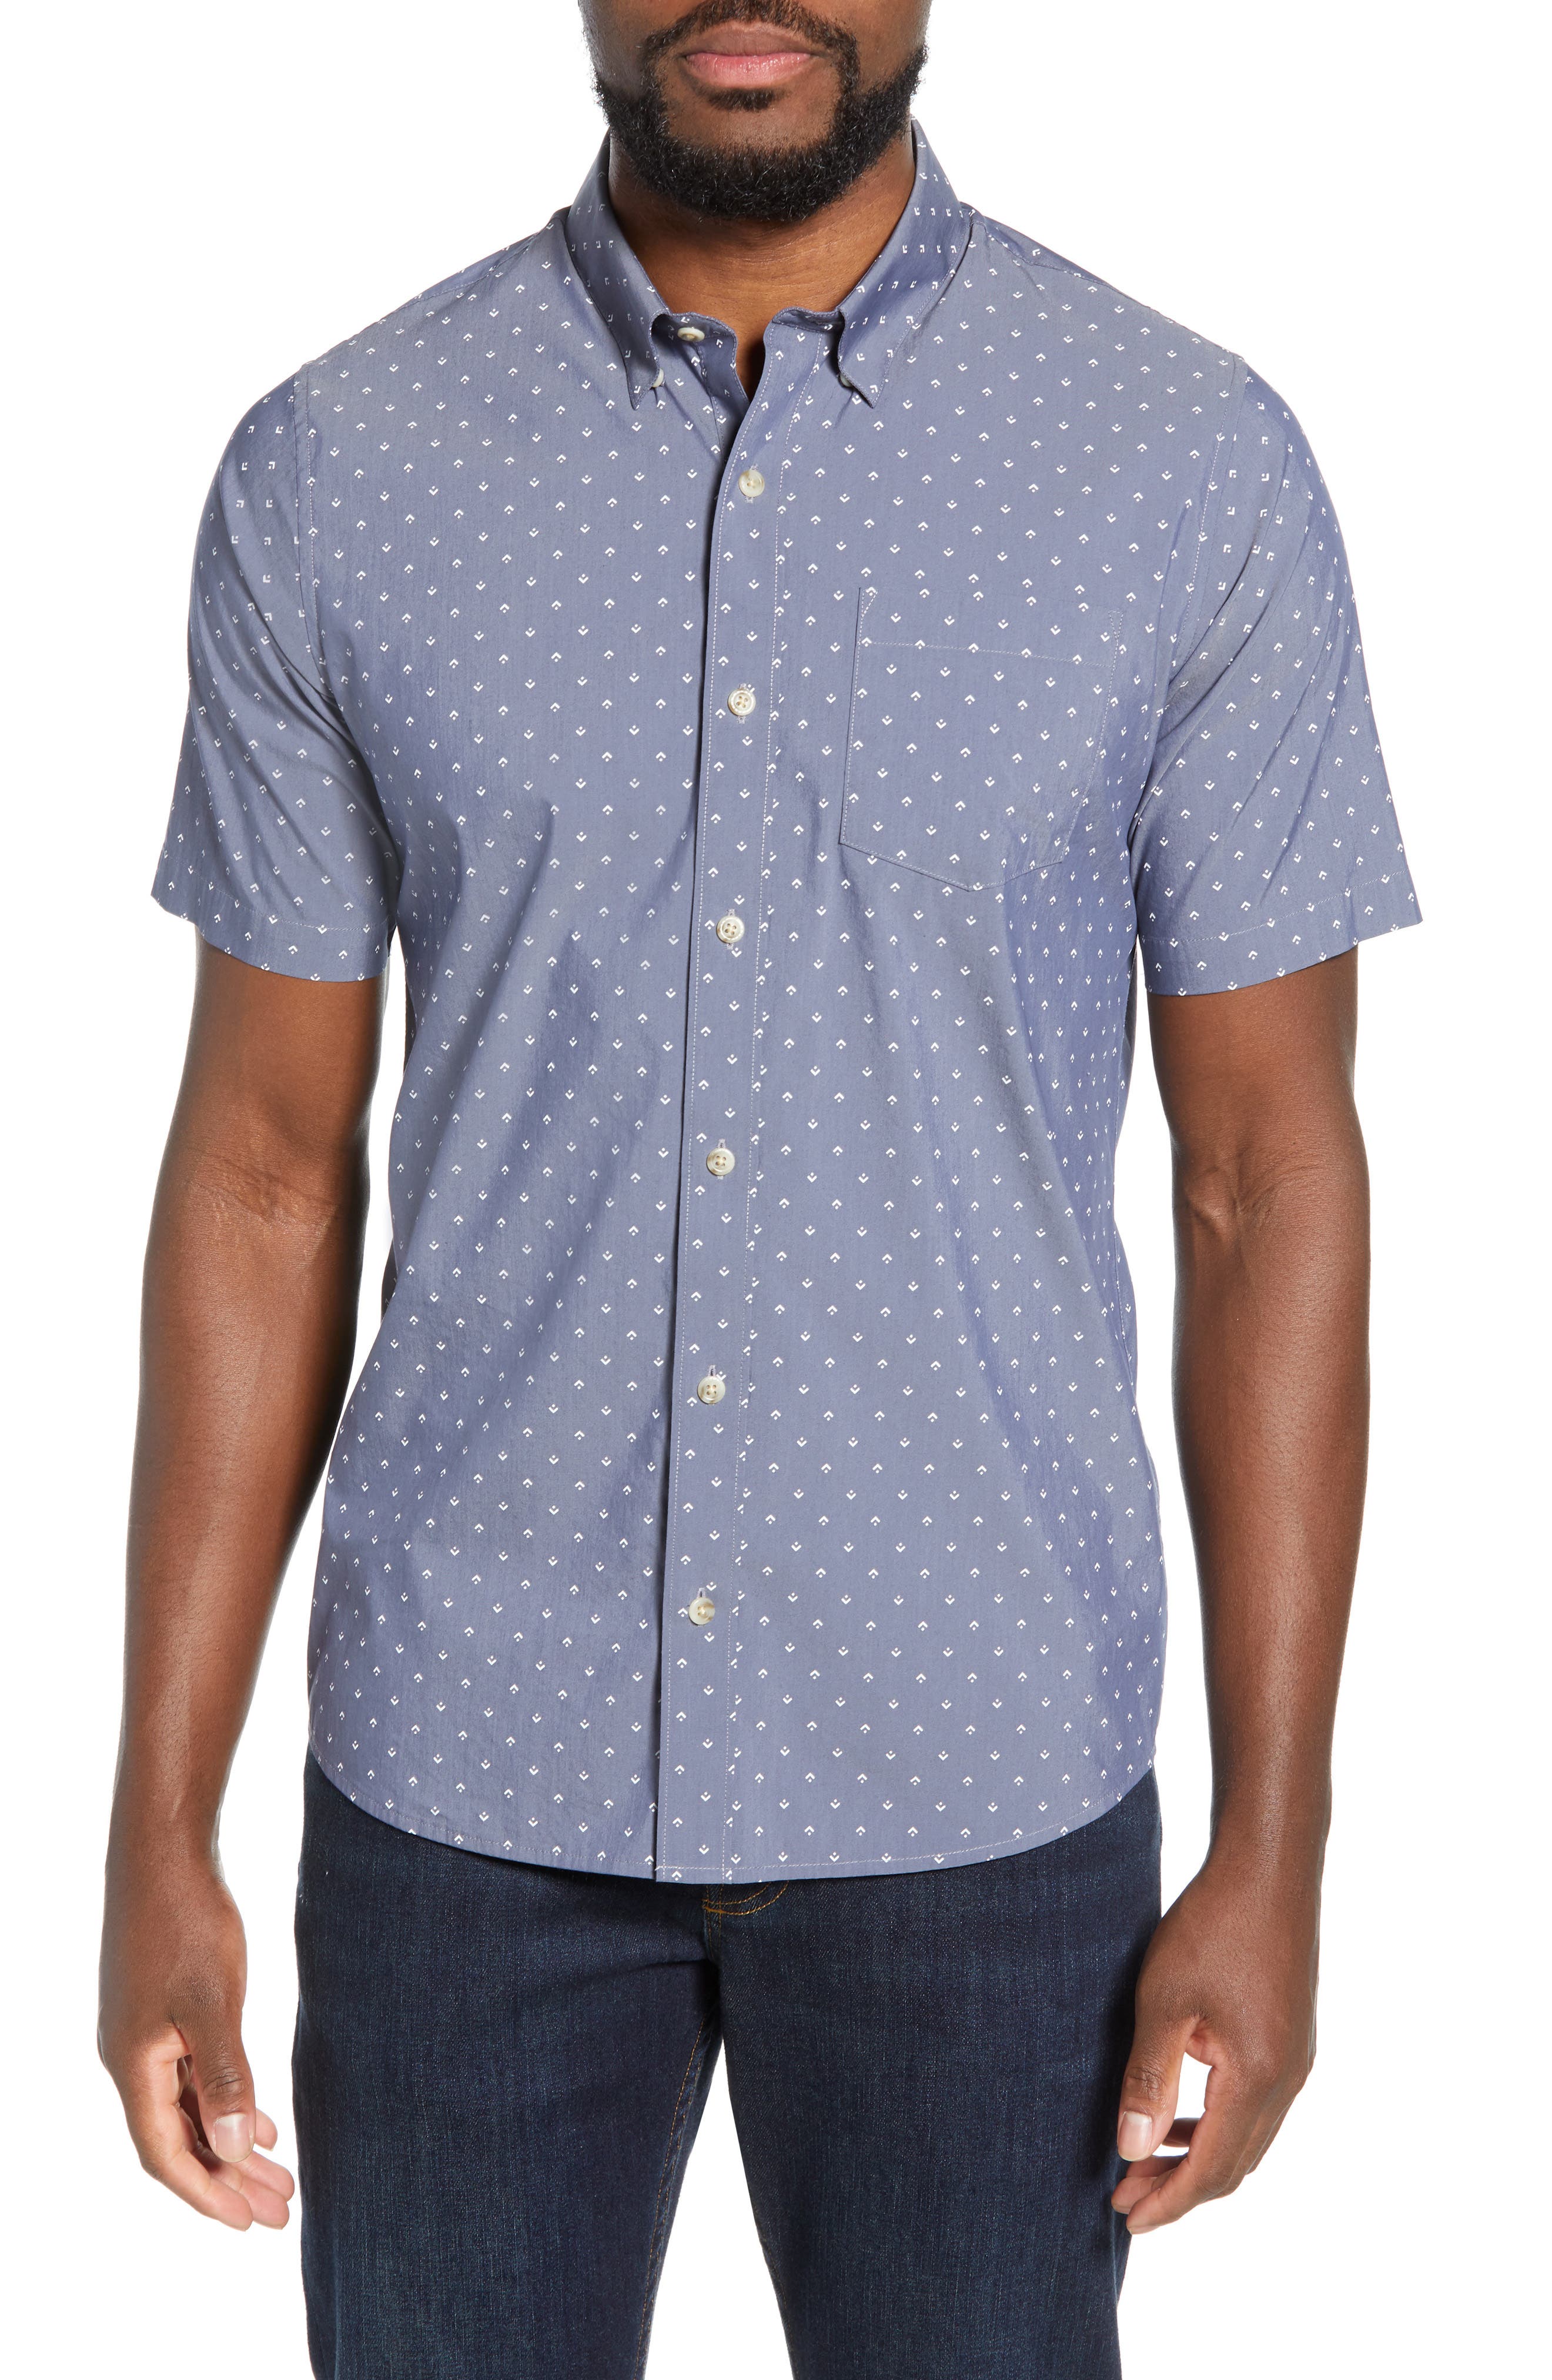 Men/'s Shirts Casual Short Sleeve Regular Fit Striped Print Button Down Shirts Cuban Collar Poplin Summer Beach Tops